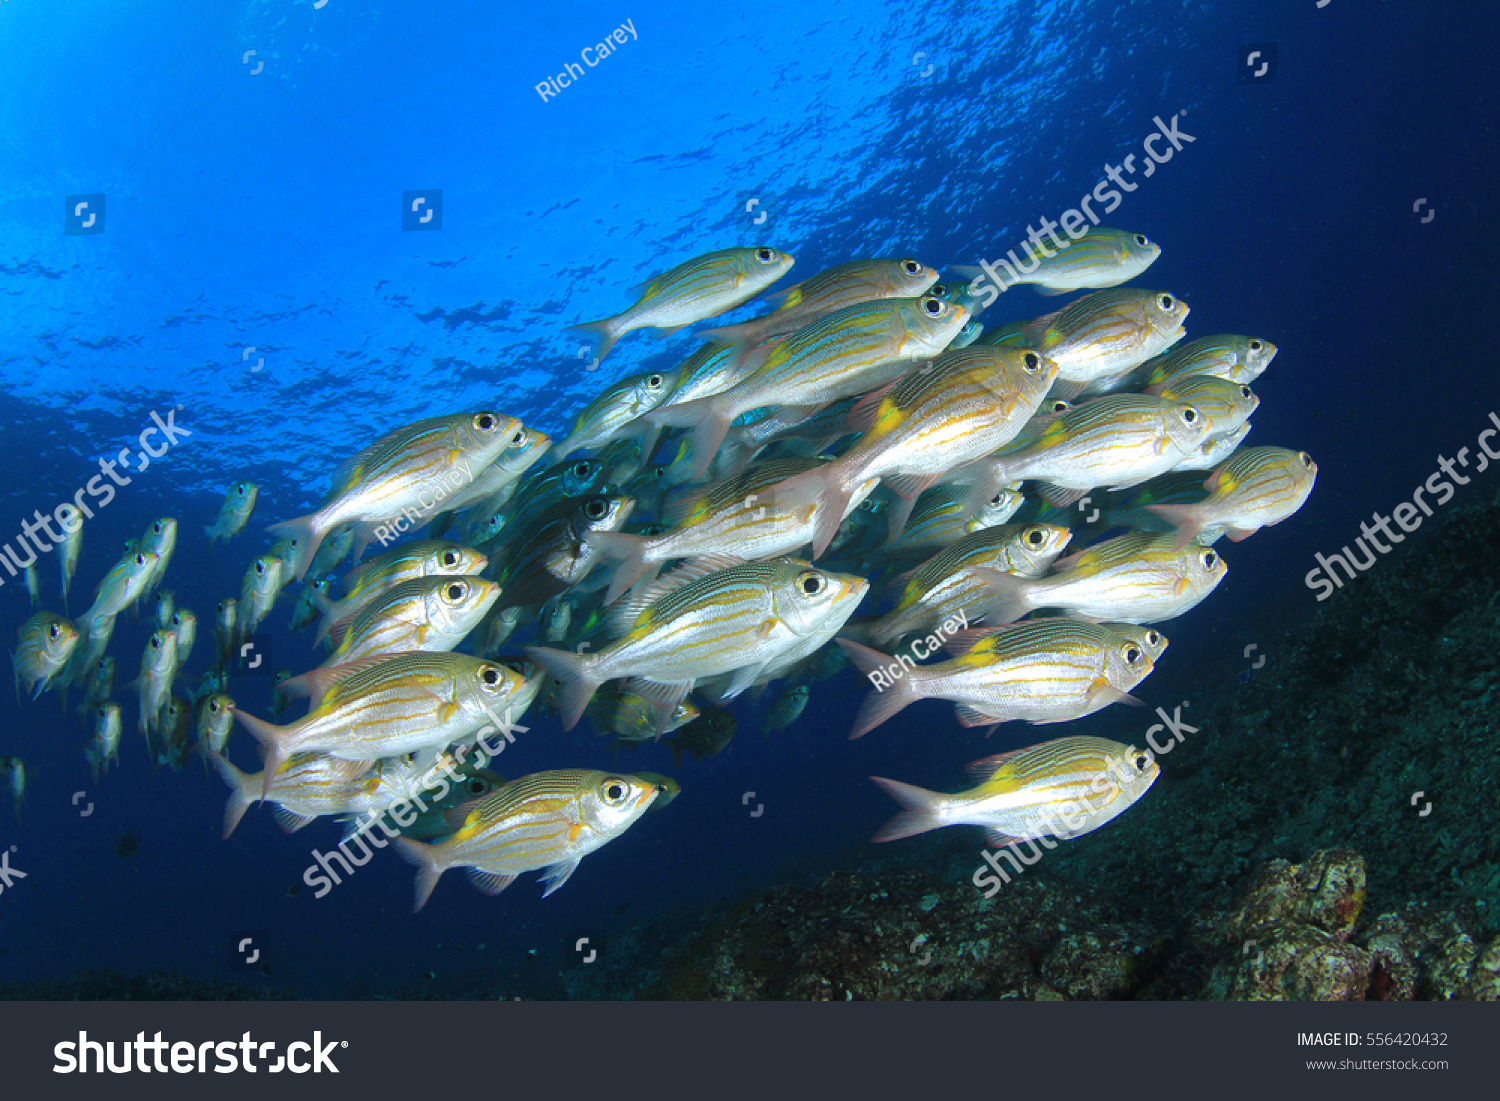 Fish in ocean. Snapper fish school. Shoal of fish in sea #556420432